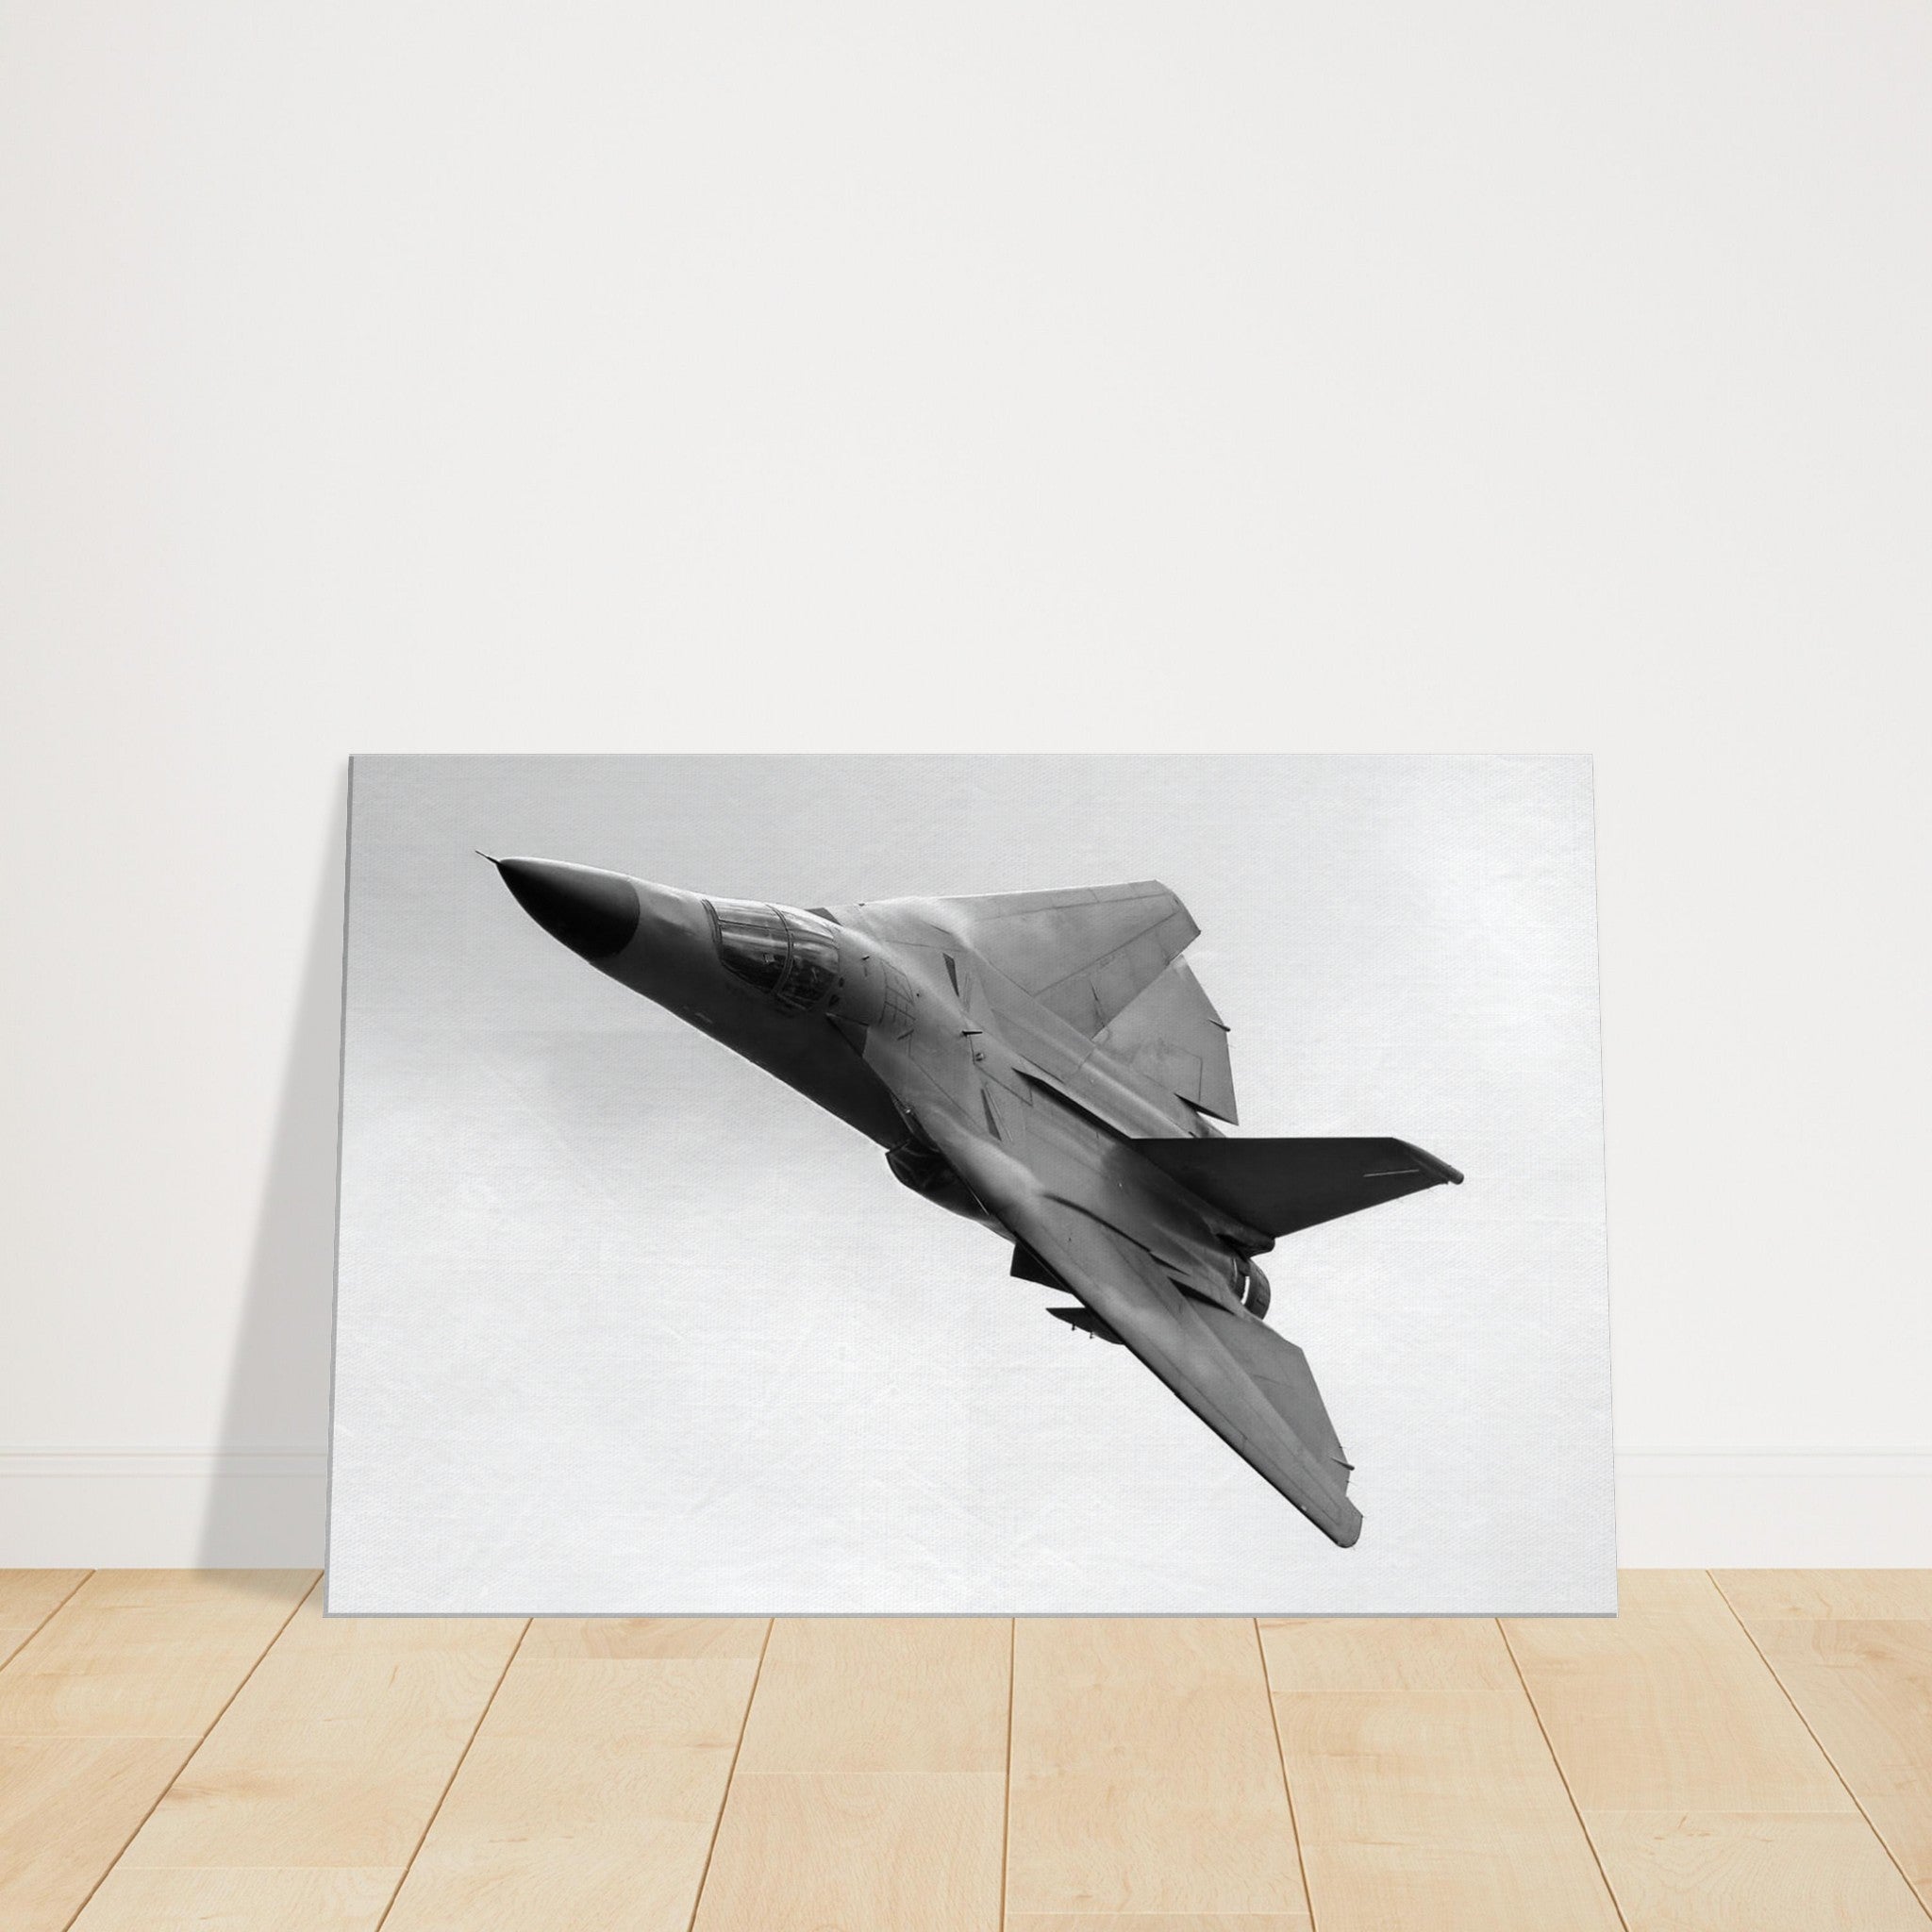 F-111 "Aardvark " on Canvas - I Love a Hangar